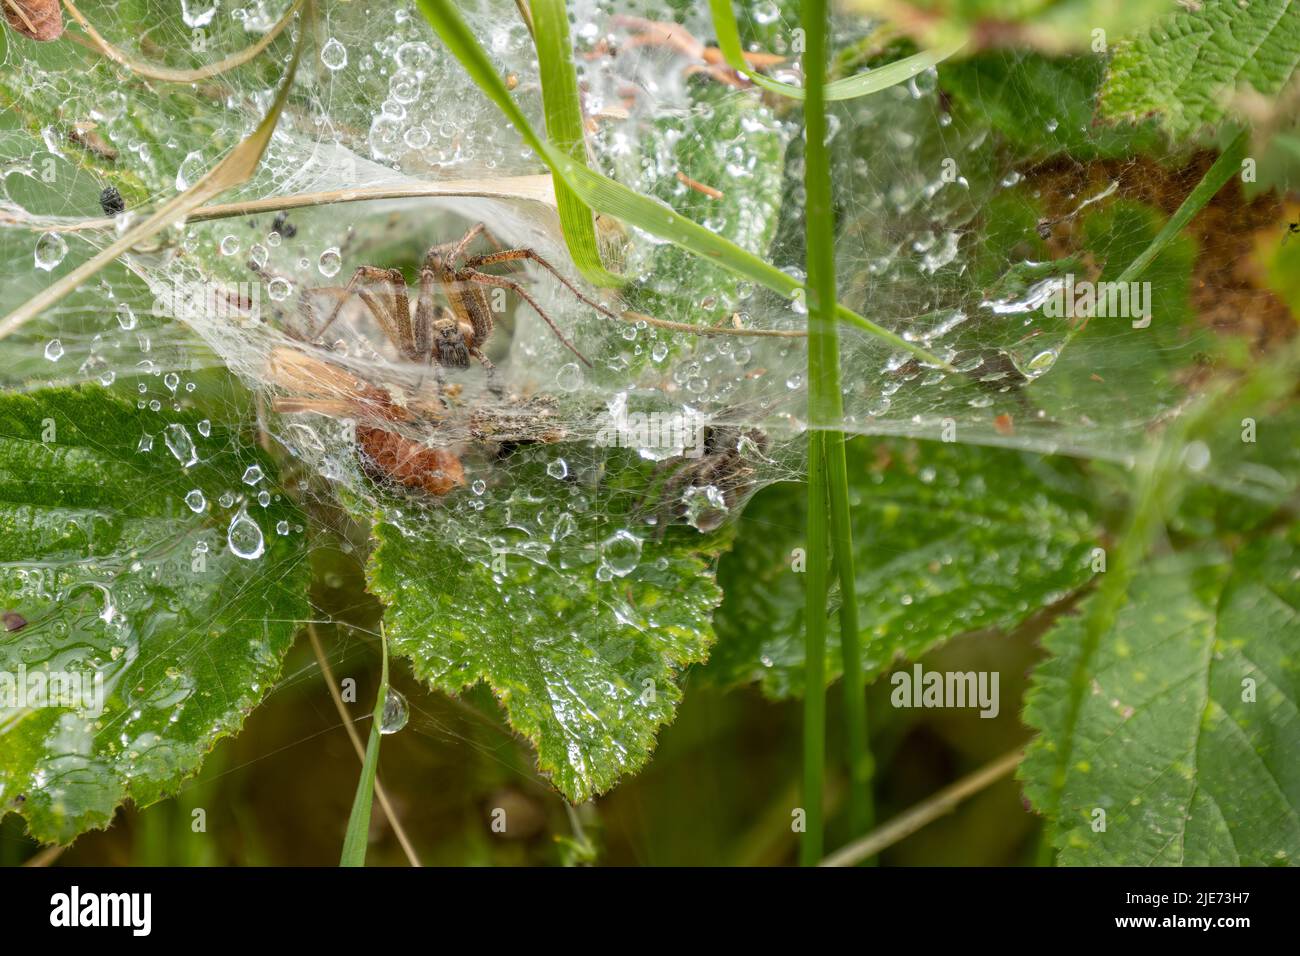 Spider Agelena labirynthica in web, scheda. Foto Stock